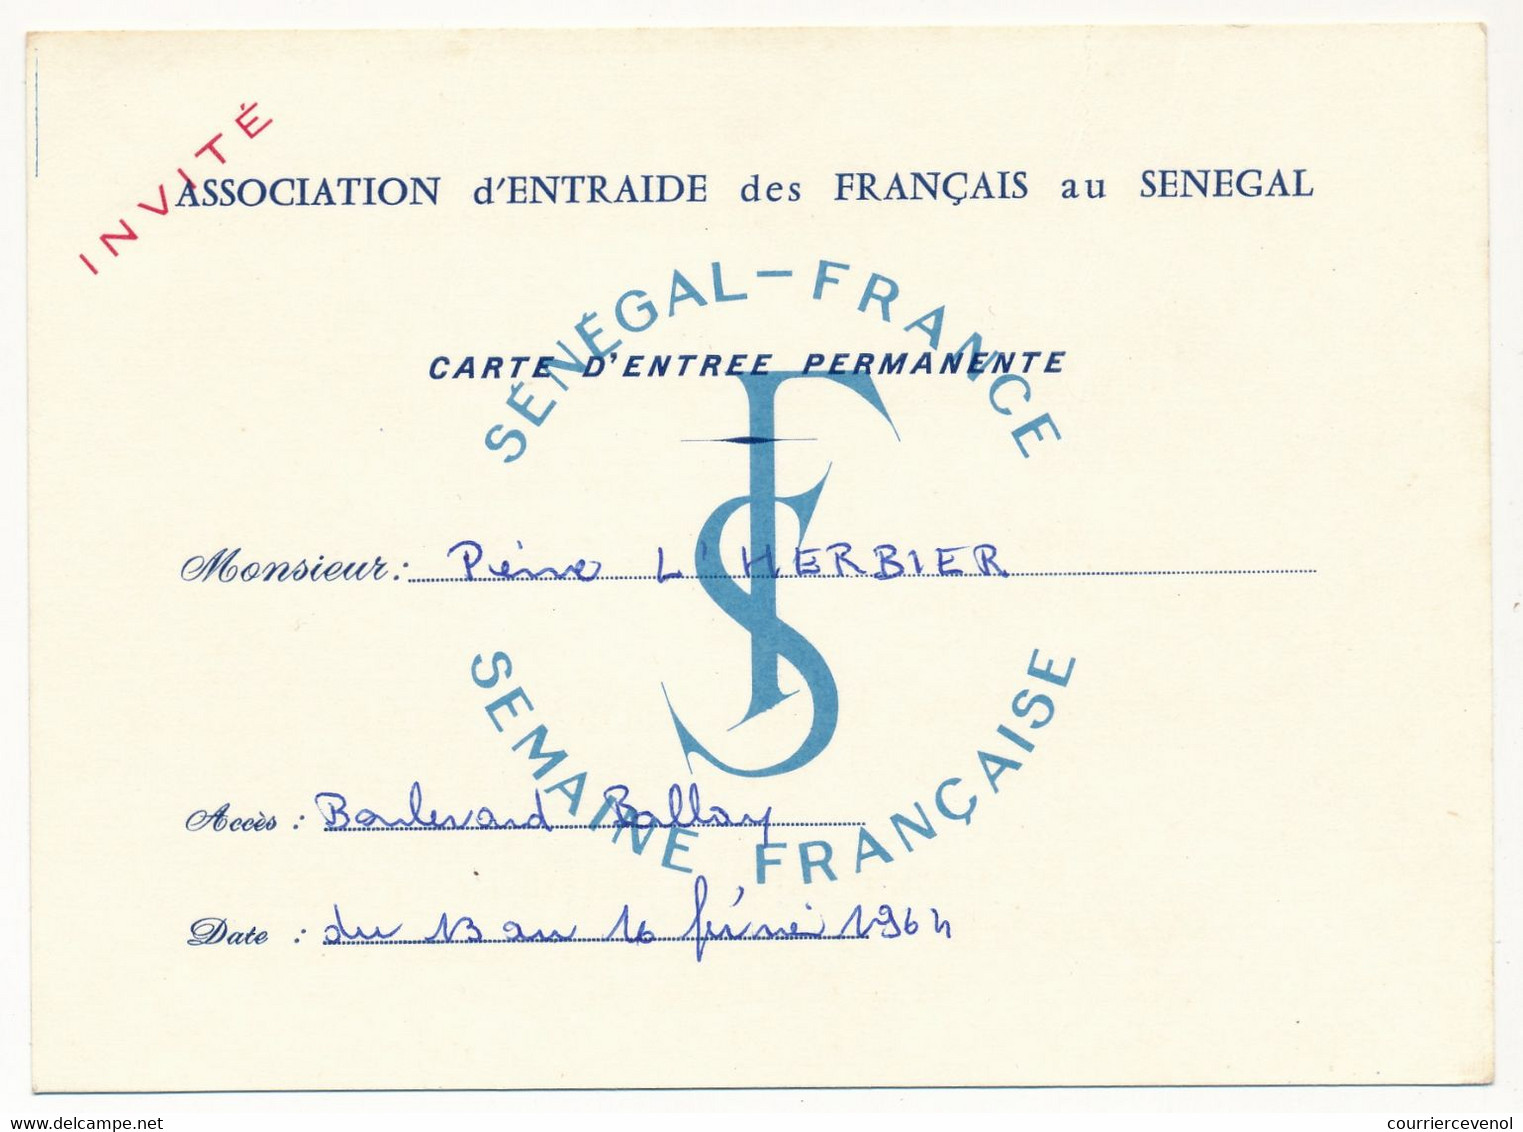 SENEGAL  / FRANCE - Carte D'Entrée Pernanente - Association D'Entraide Des Français Au Sénégal - 1964 - Unclassified